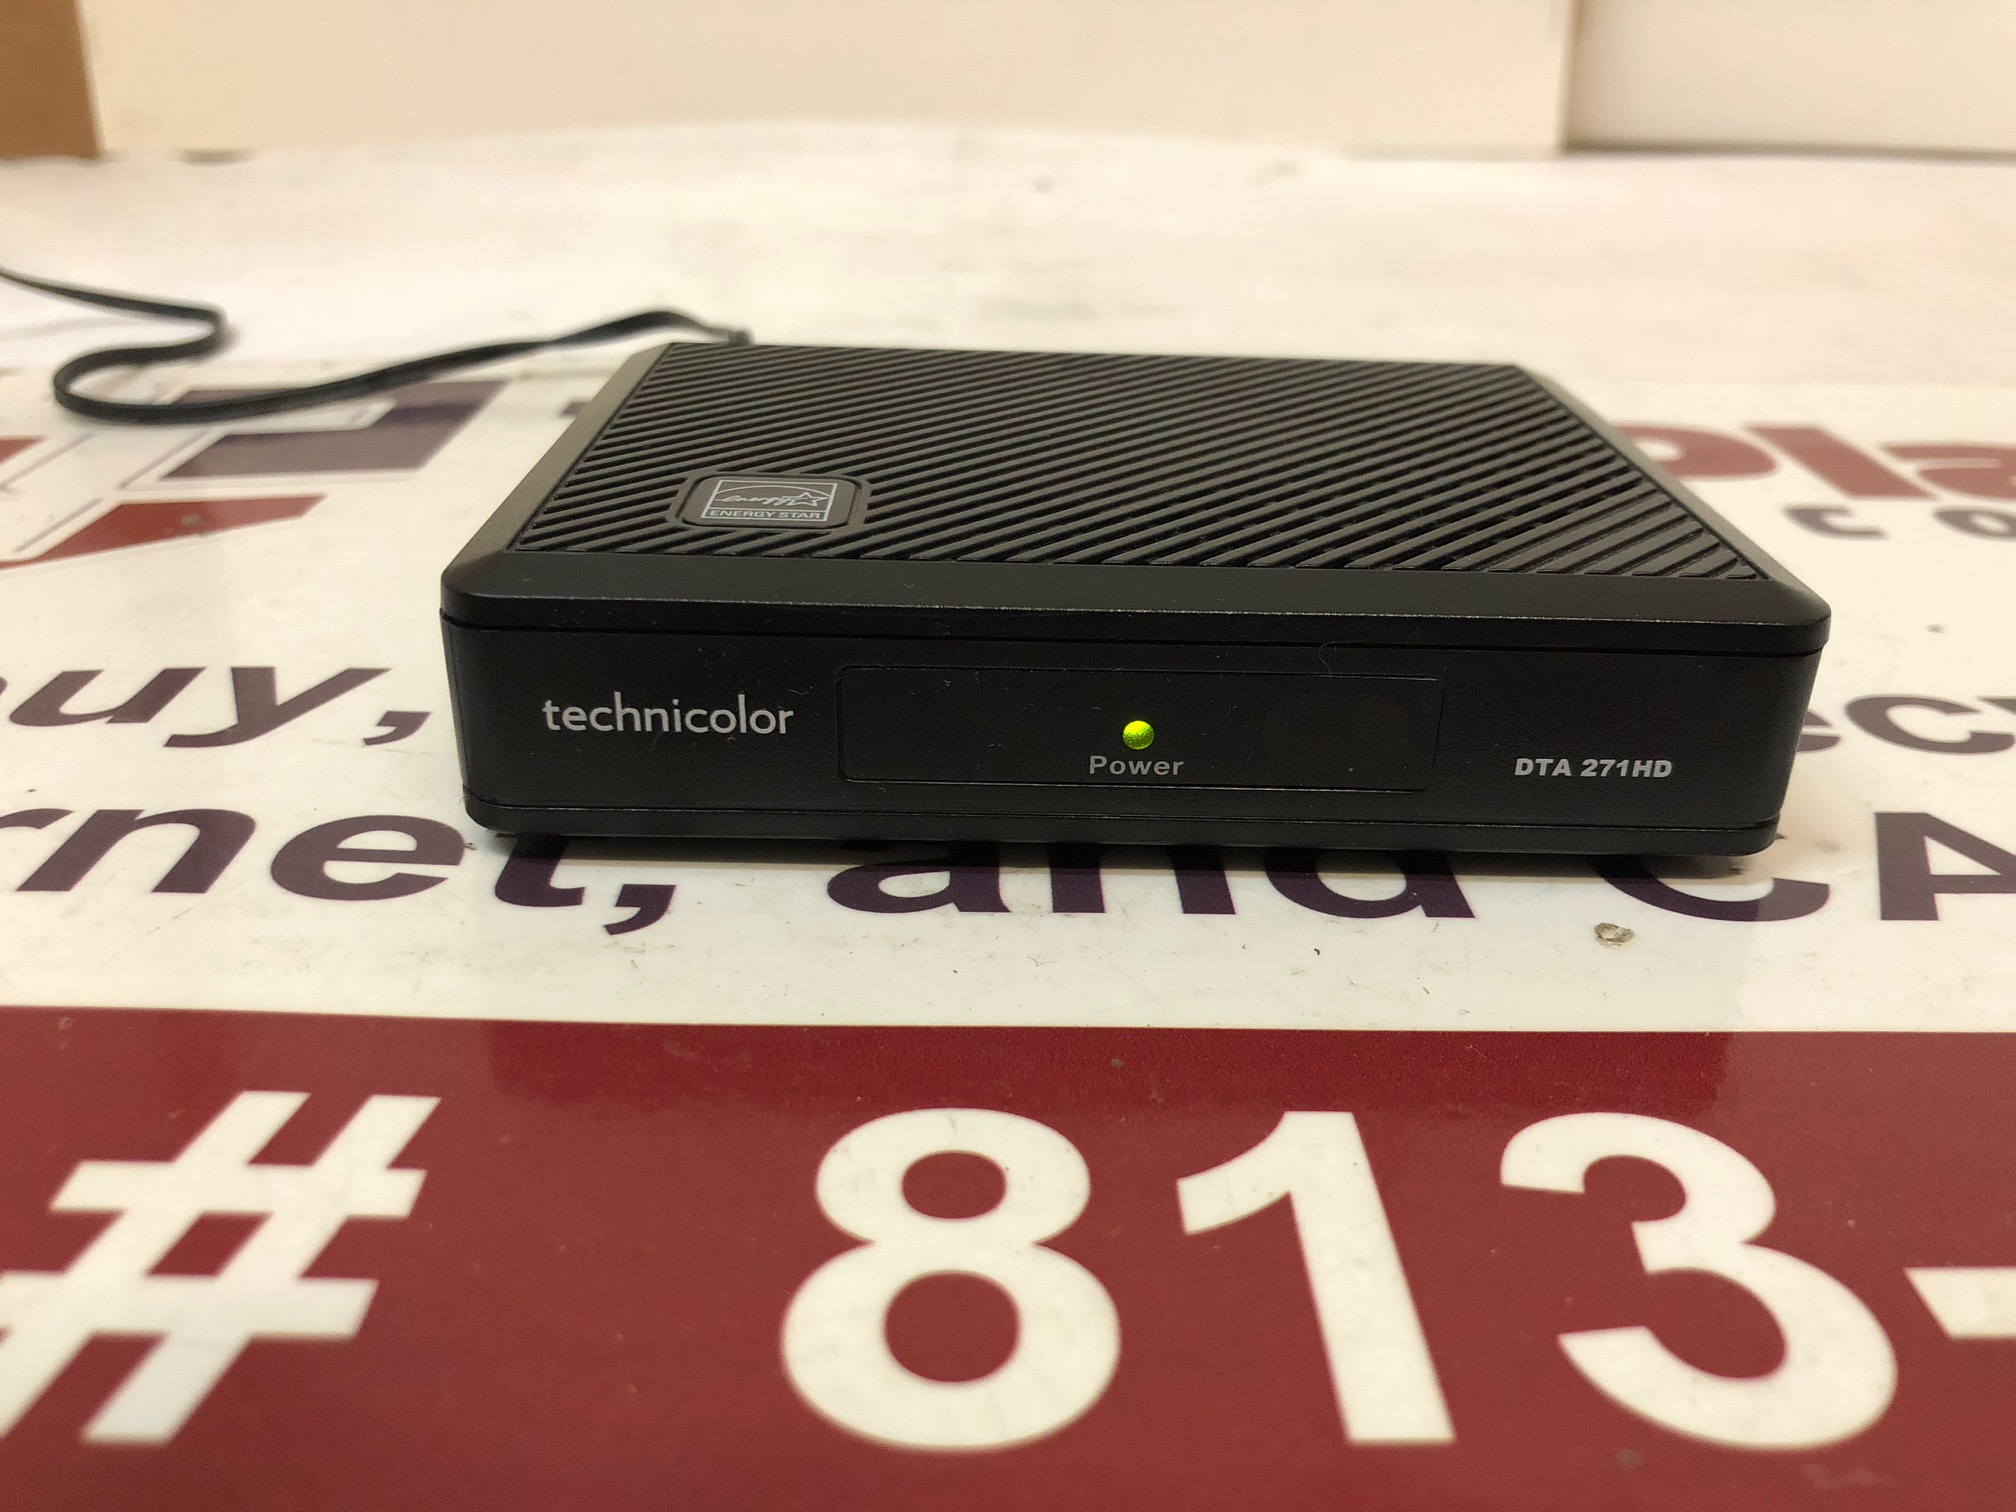 Technicolor/Cisco DTA271HD DTA271-GEN-K9 TV Receiver with power